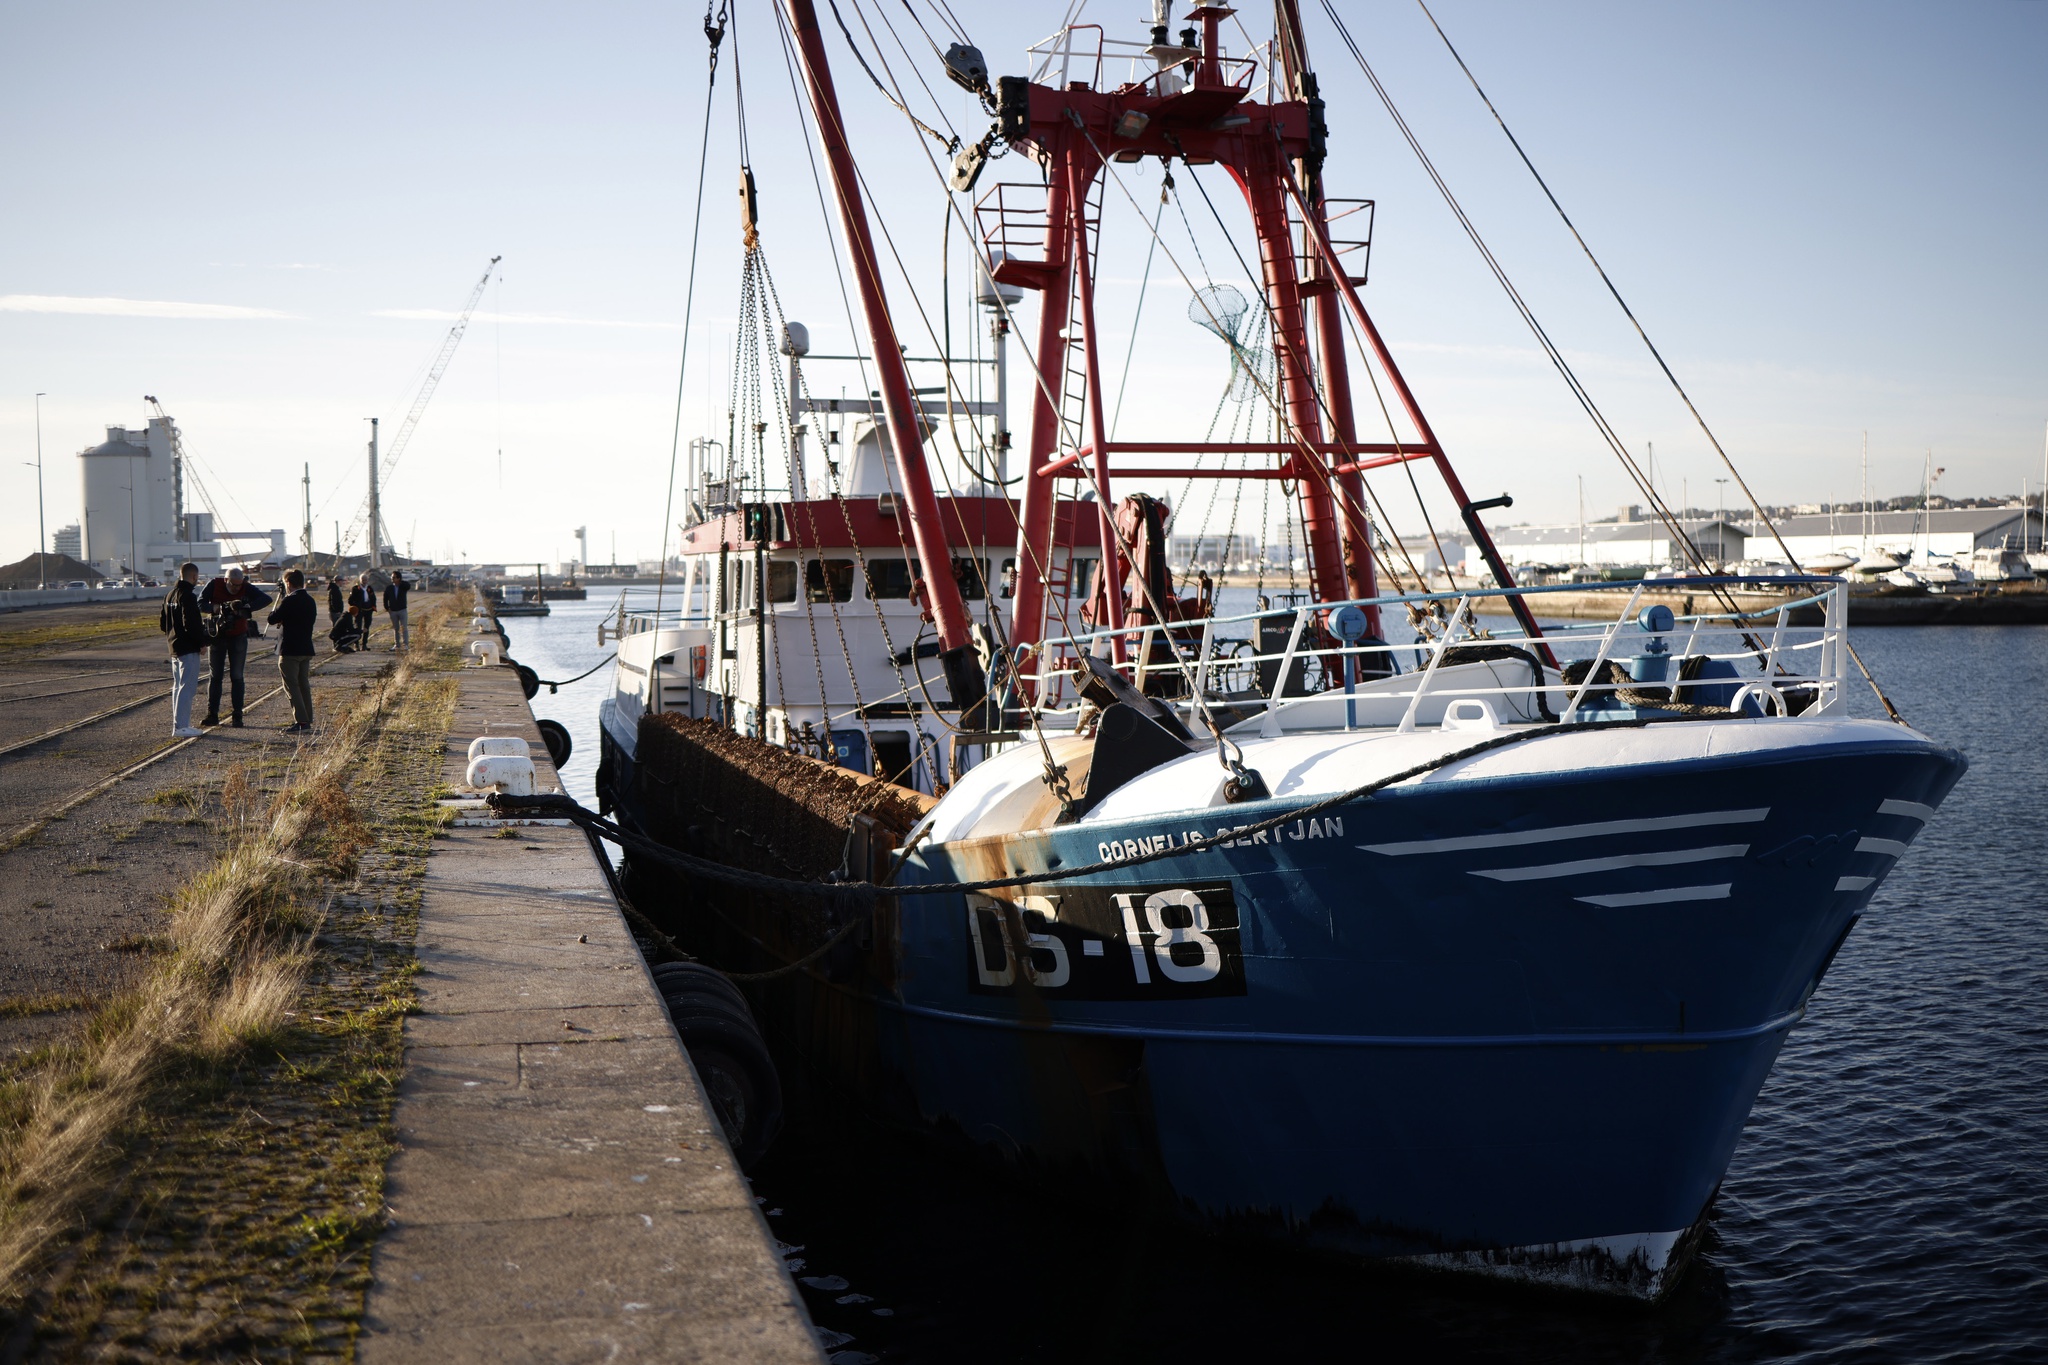 La France menace de poursuites judiciaires si le Royaume-Uni ne change pas sa position sur la pêche |  Union européenne